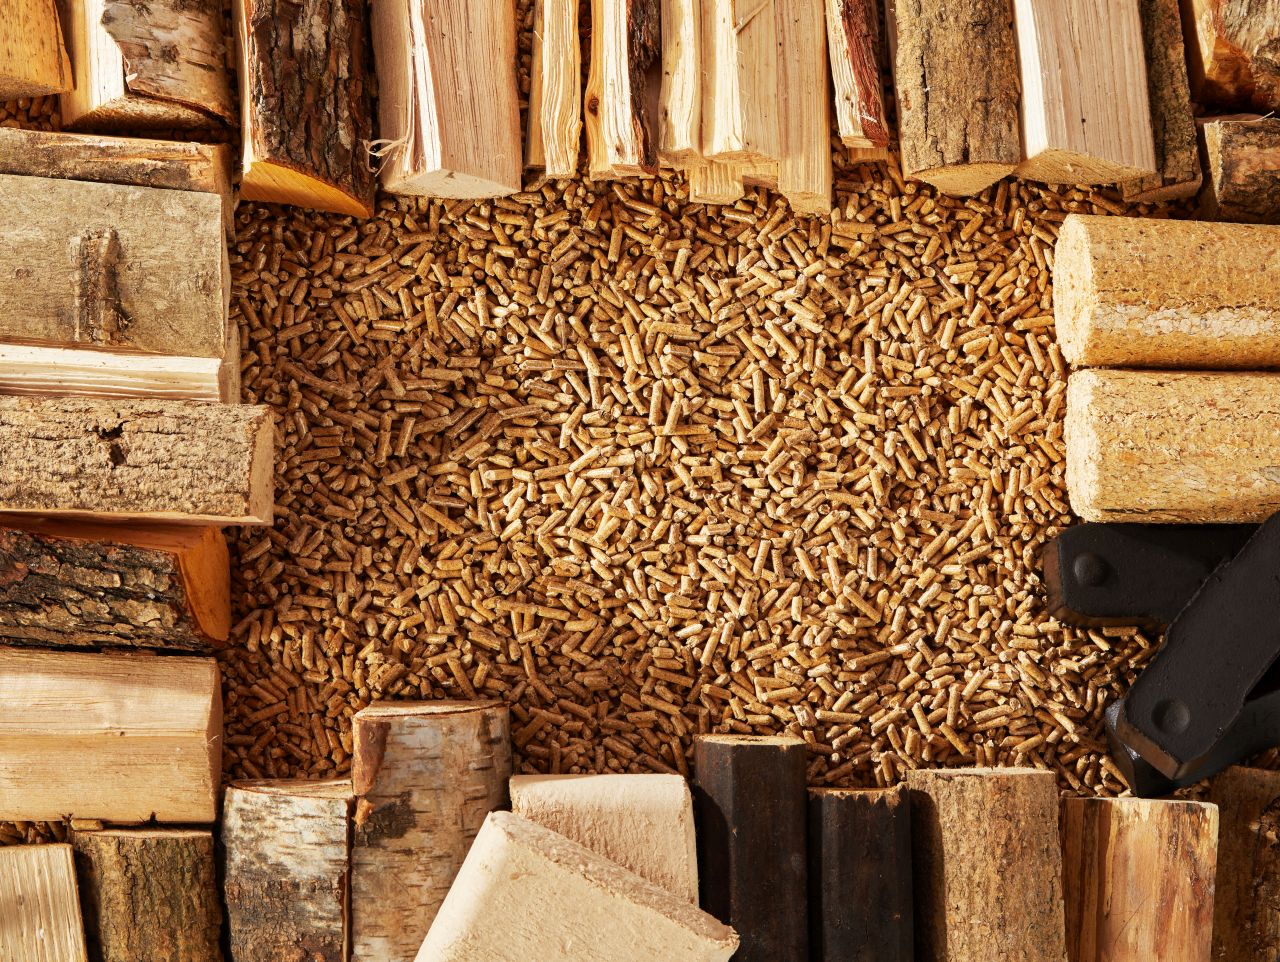 Kiedy warto kupić pellet zamiast tradycyjnego drewna?